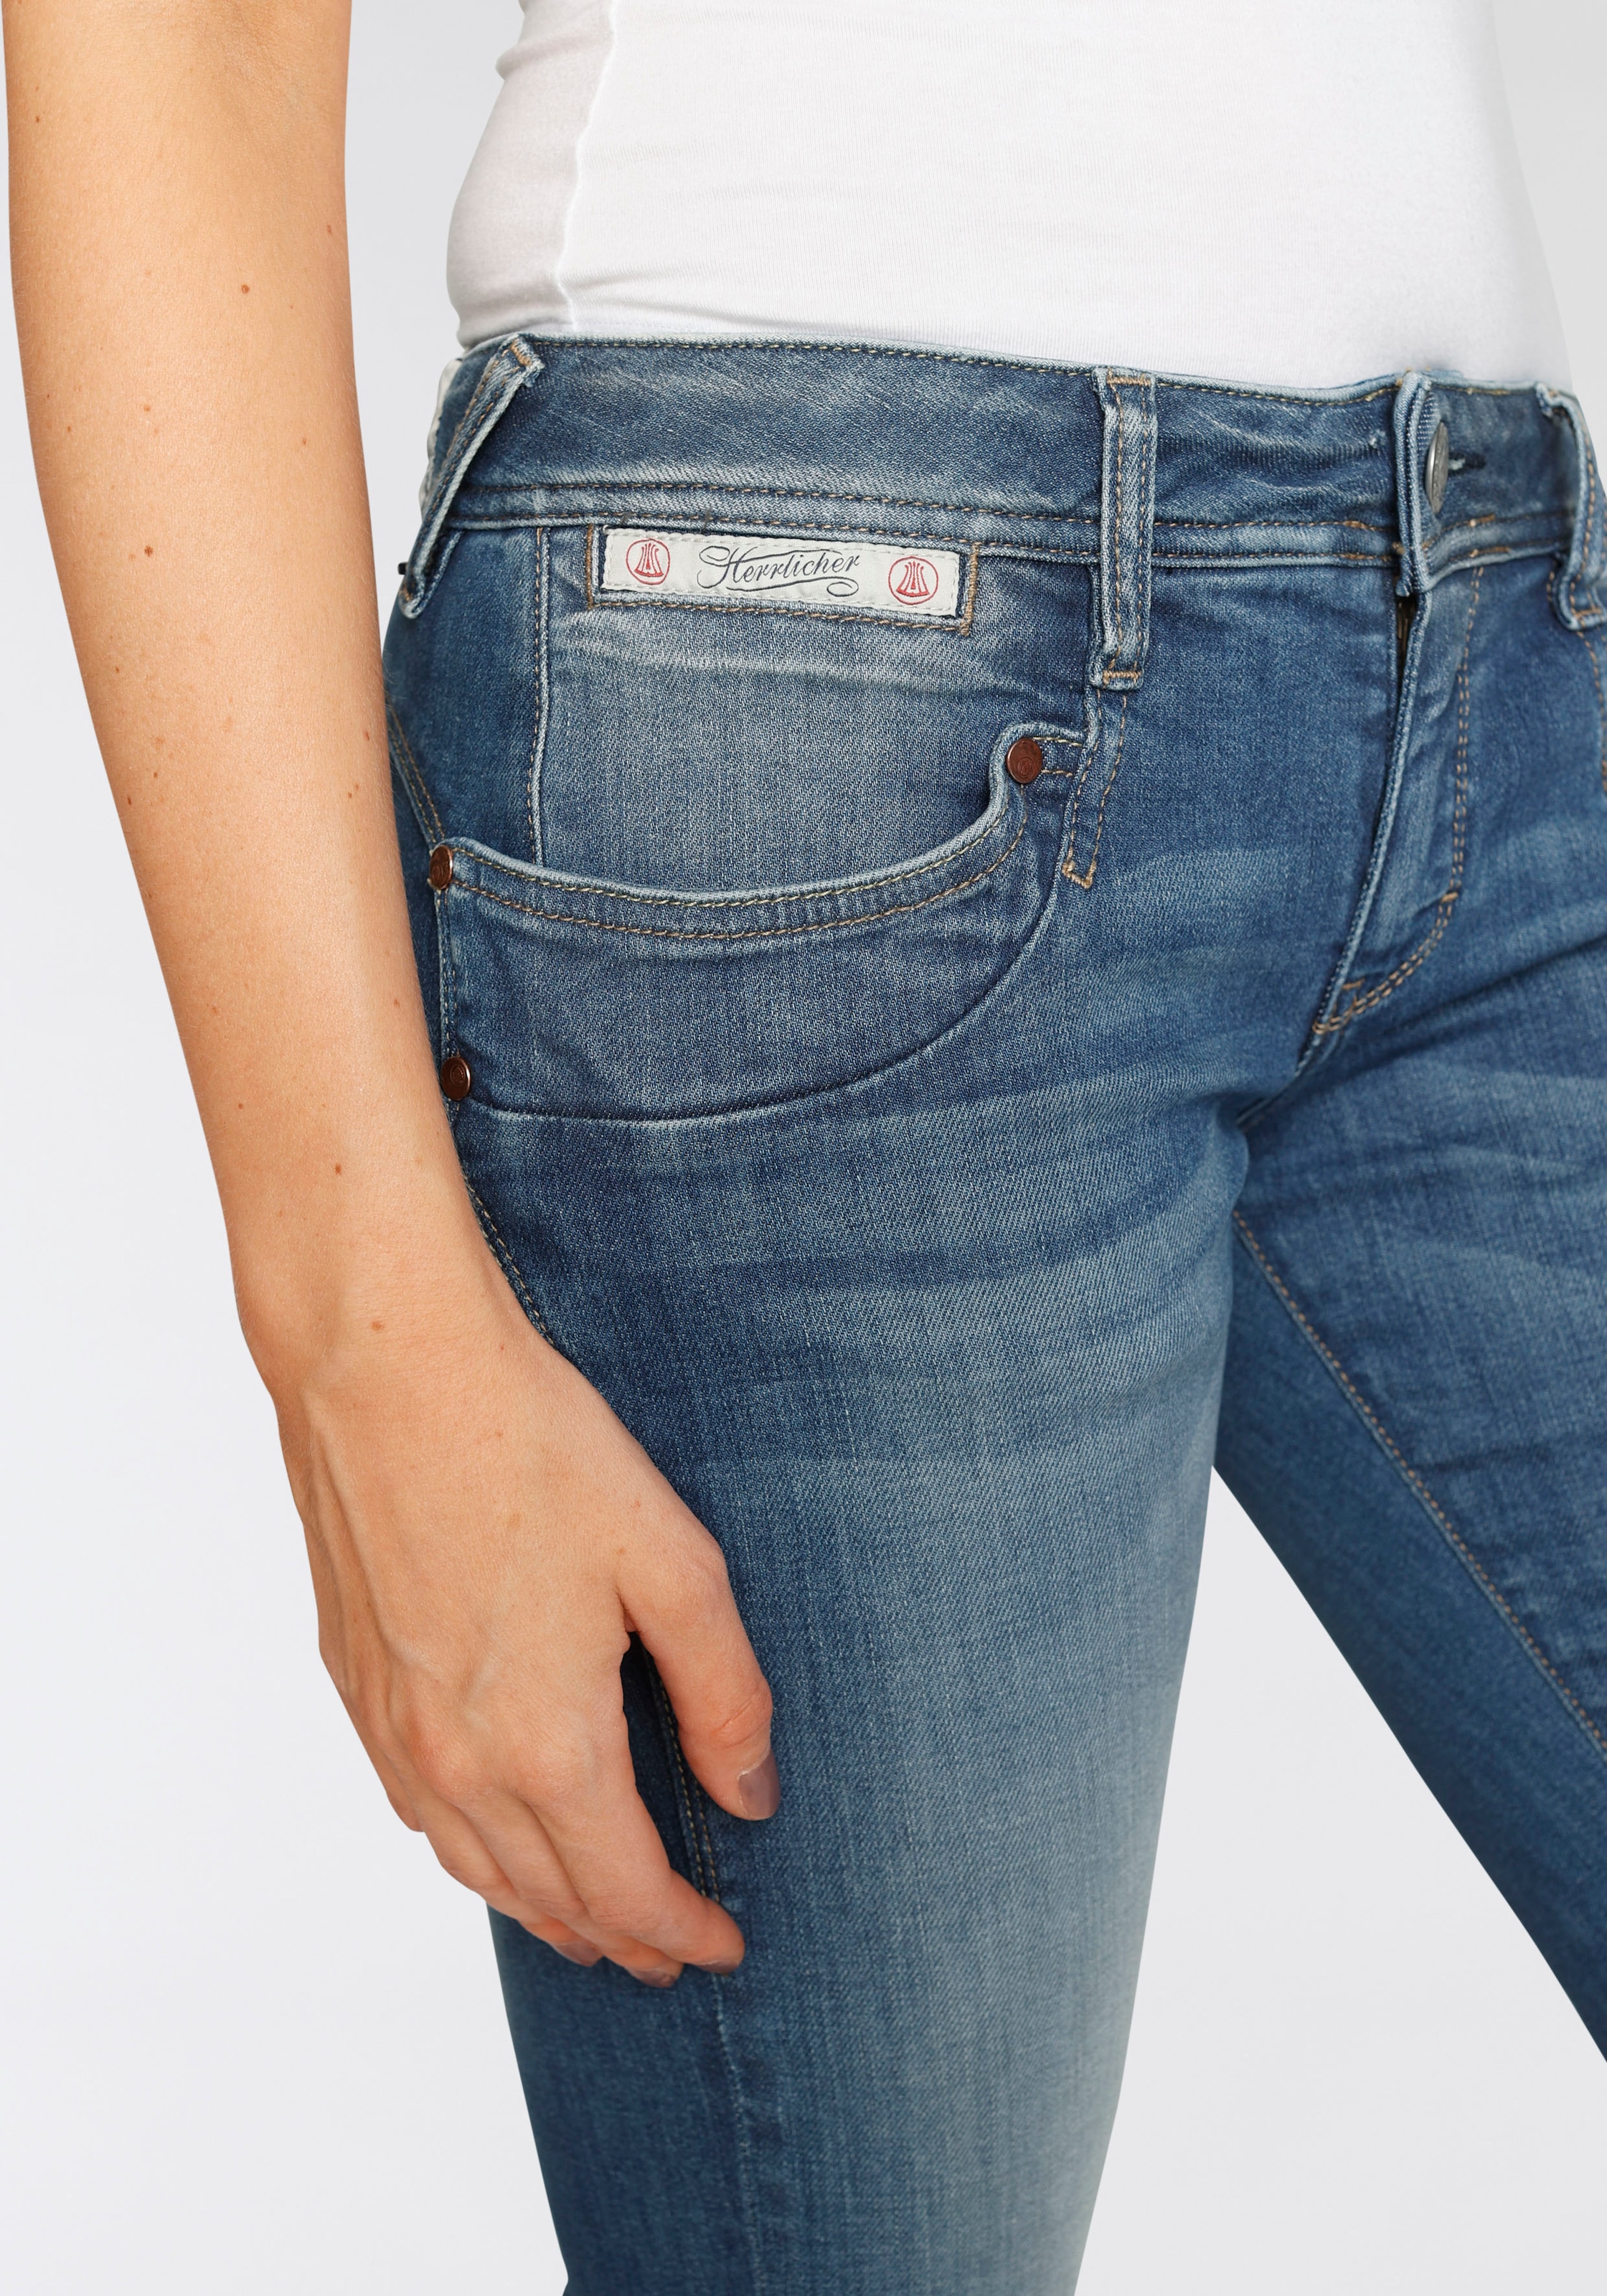 Kitotex Herrlicher ORGANIC«, »PIPER dank Technology umweltfreundlich SLIM Slim-fit-Jeans kaufen